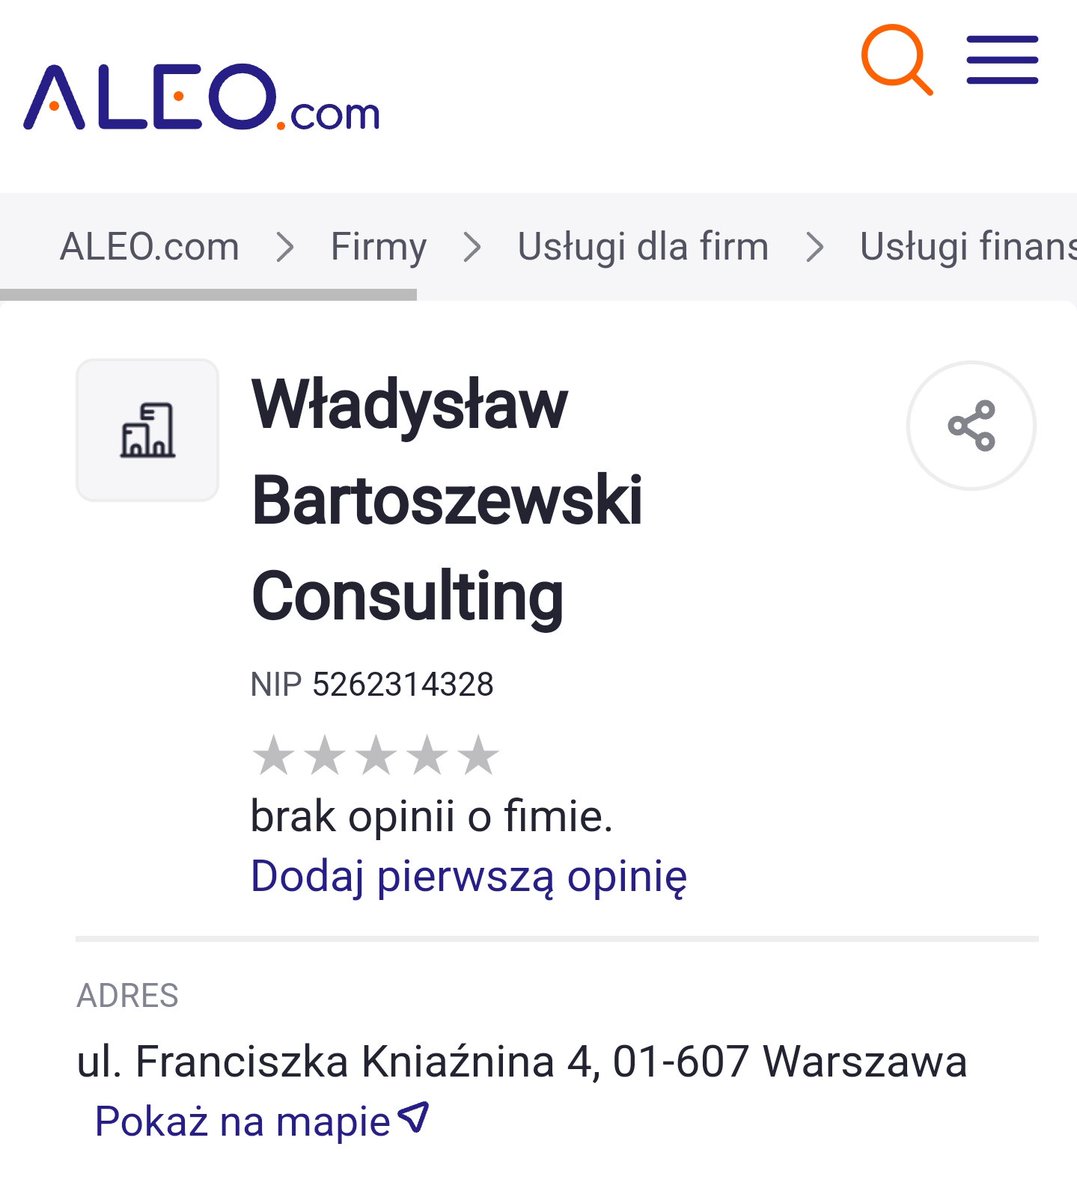 Adres z Paradise Papers też jakoś znajomy, prawda panie Władysławie?